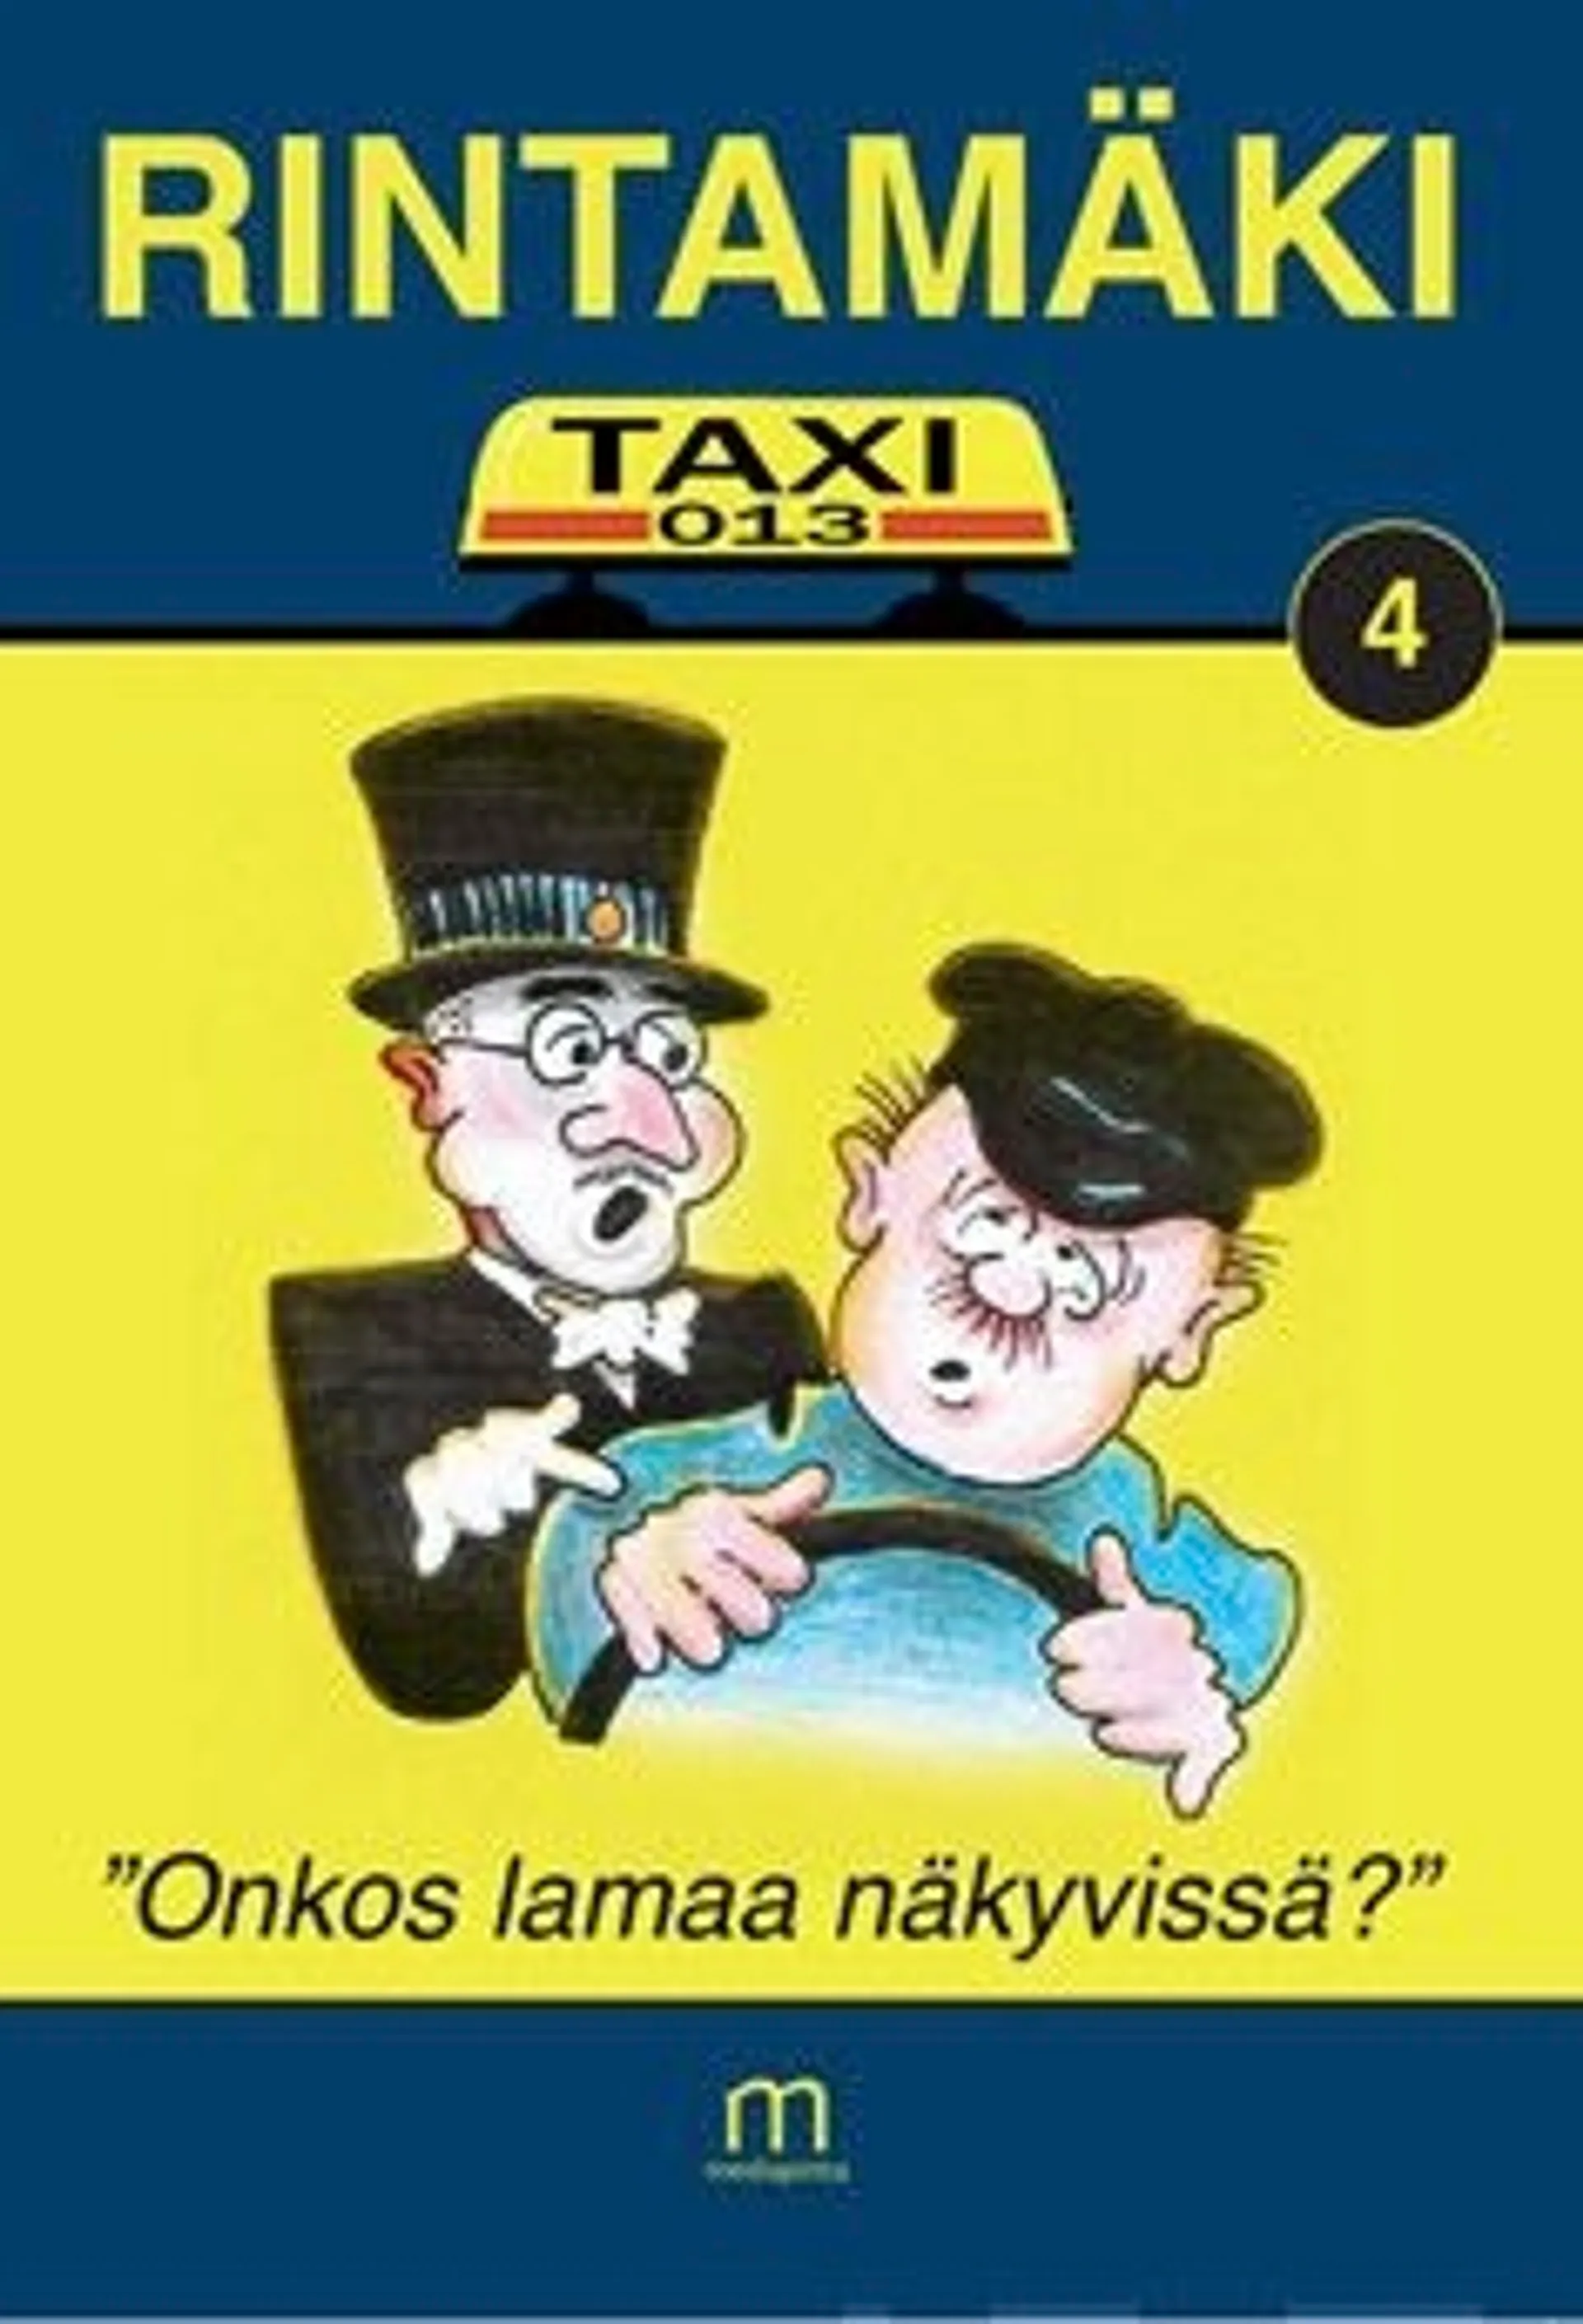 Rintamäki, Taxi-013 - "Onkos lamaa näkyvissä?"